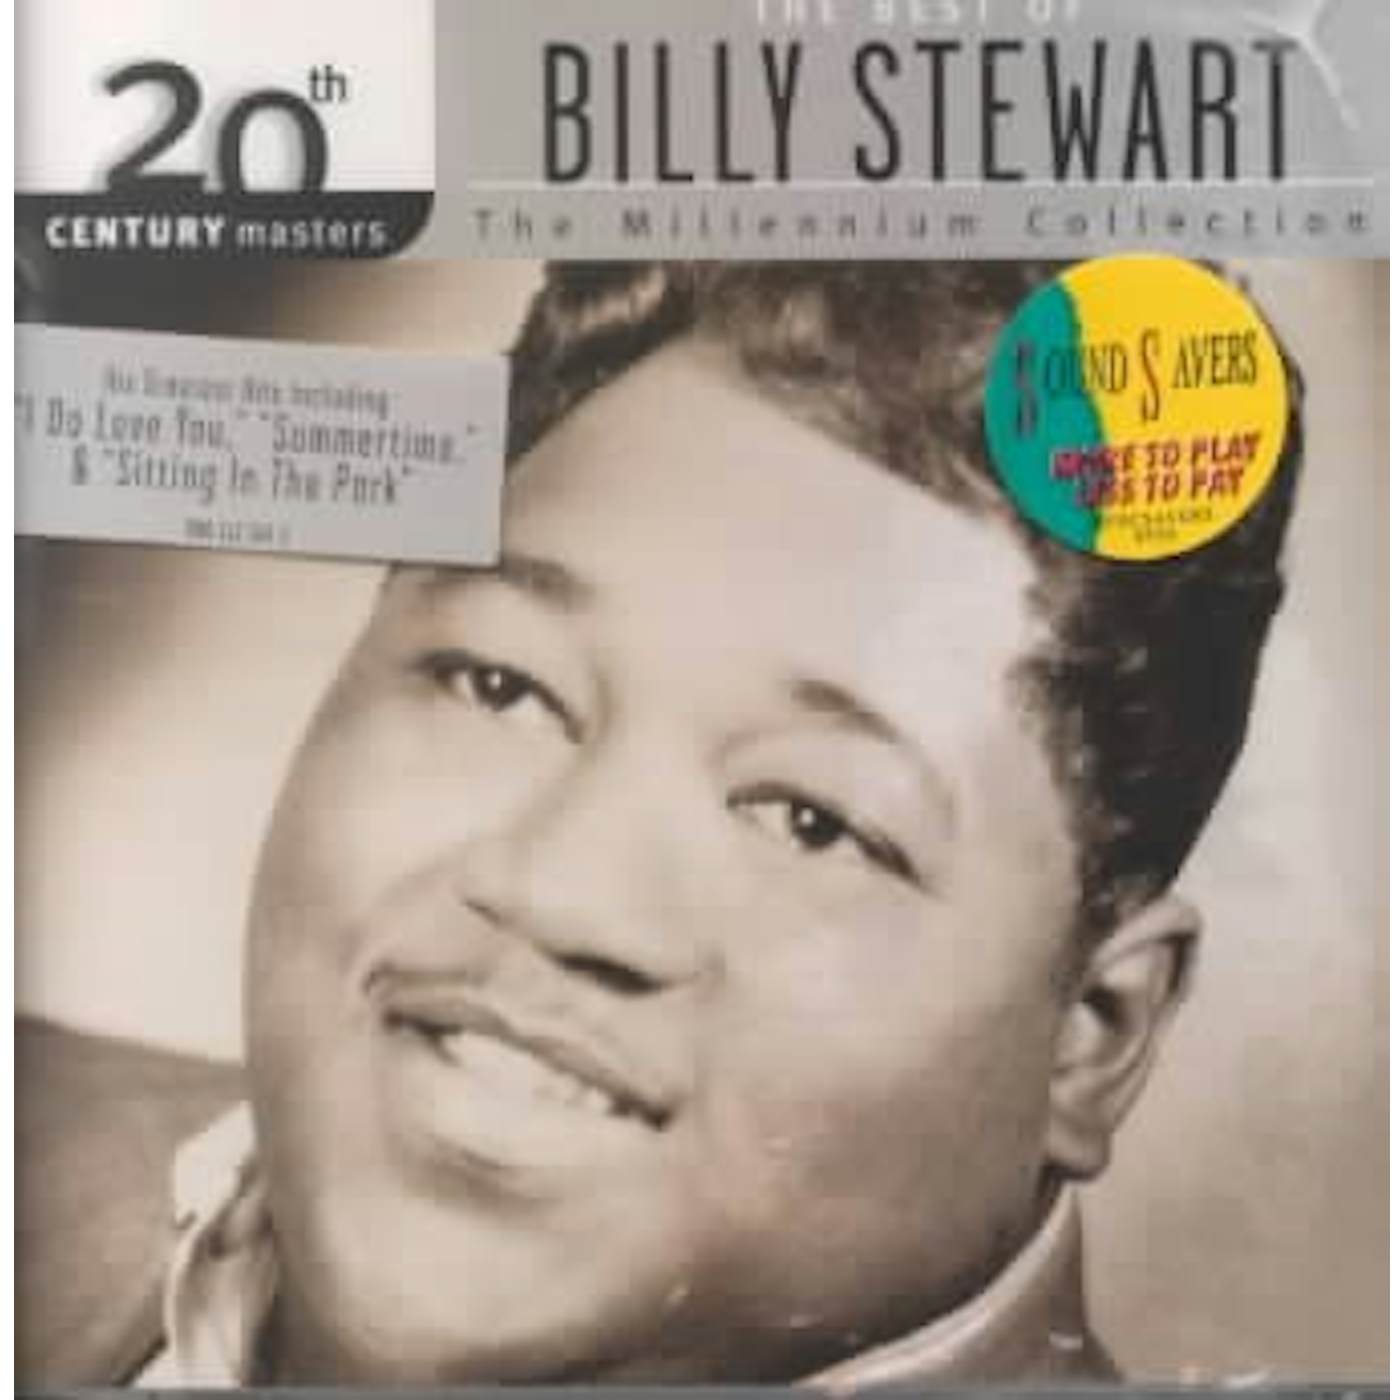 Billy Stewart Millennium Collection - 20th Century Masters CD